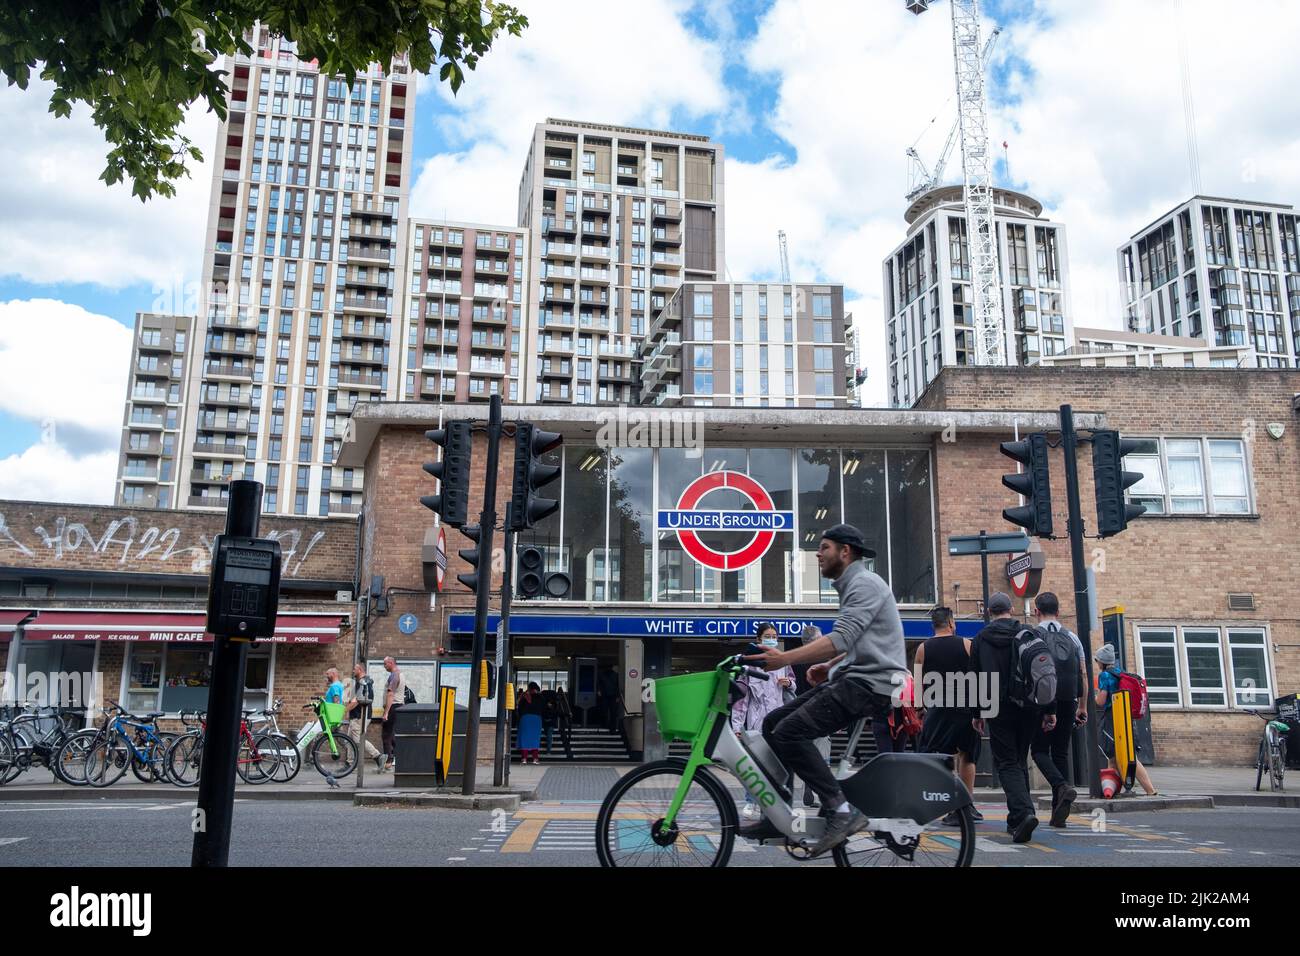 Londres, juillet 2022: White City Station avec de nouveaux bâtiments résidentiels. Une station de métro de Londres dans la région de Shepherd Bush à l'ouest de Londres Banque D'Images